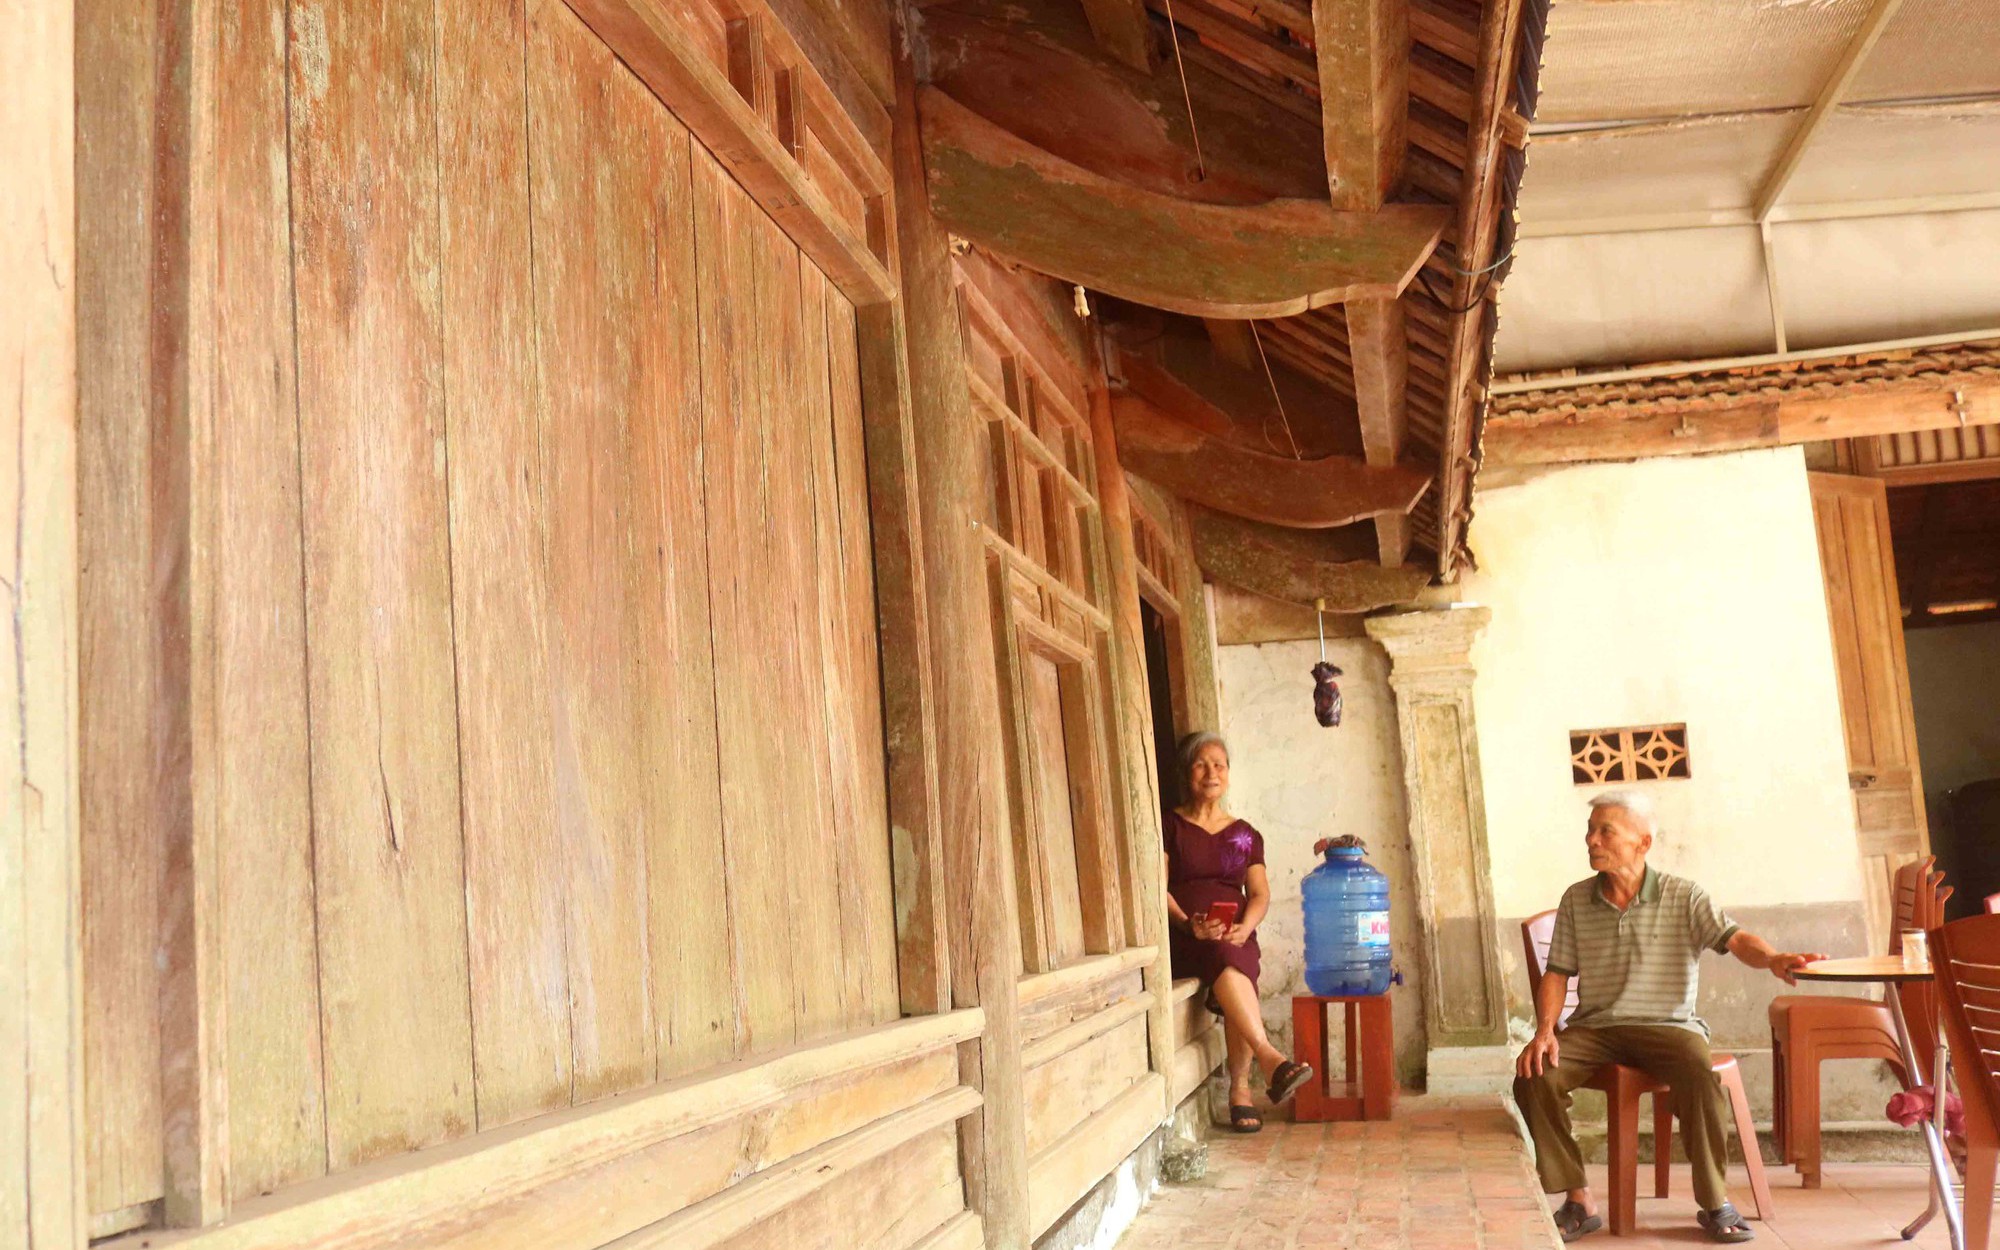 Cận cảnh nhà cổ ở làng quê xã Kim Liên của Nghệ An, có một nhà gỗ từ thời nhà Lê, đã gần 300 tuổi